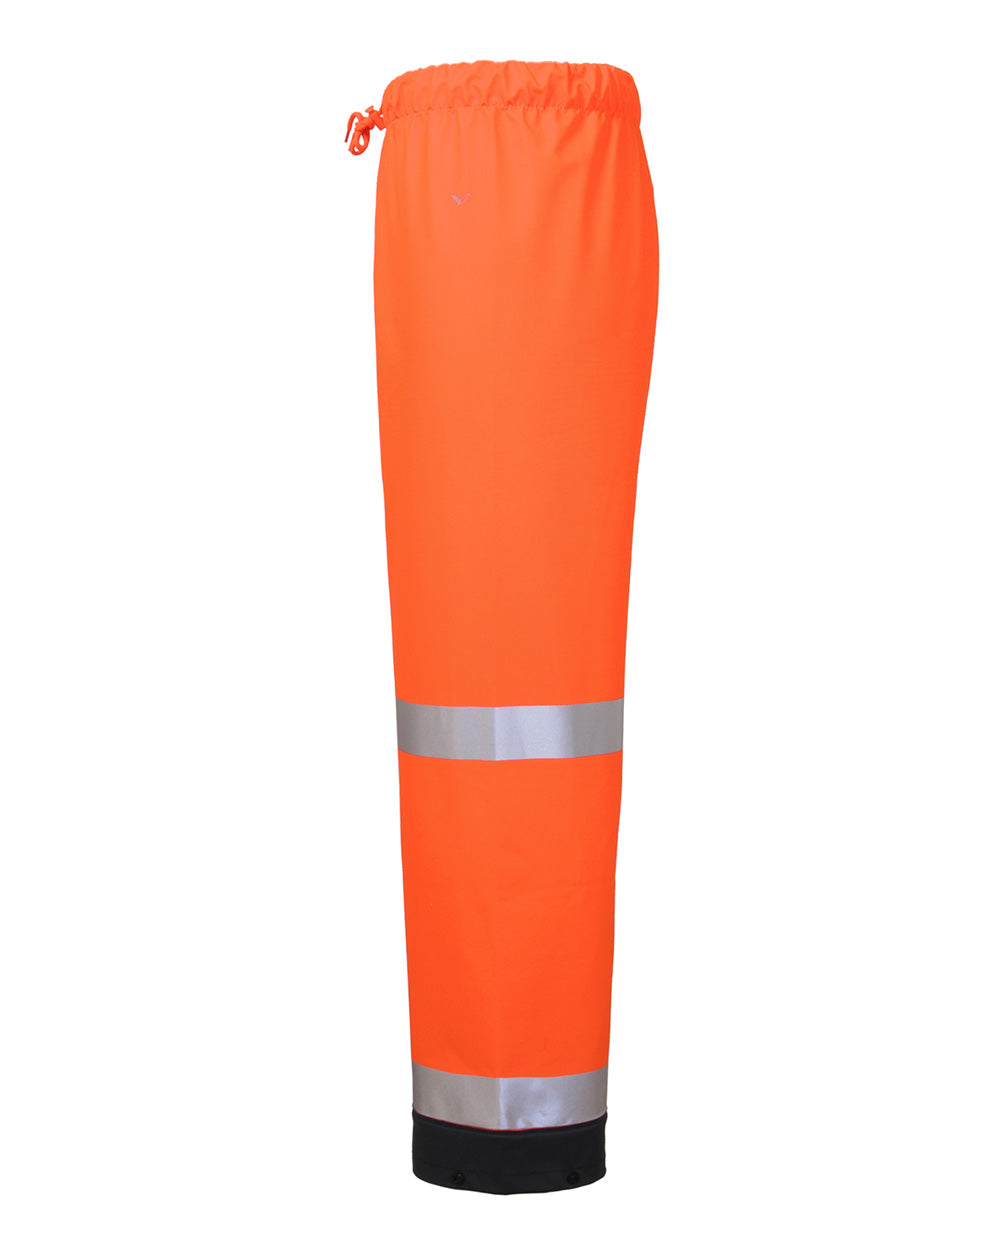 Shelter Pant in Fluoro Orange & Navy